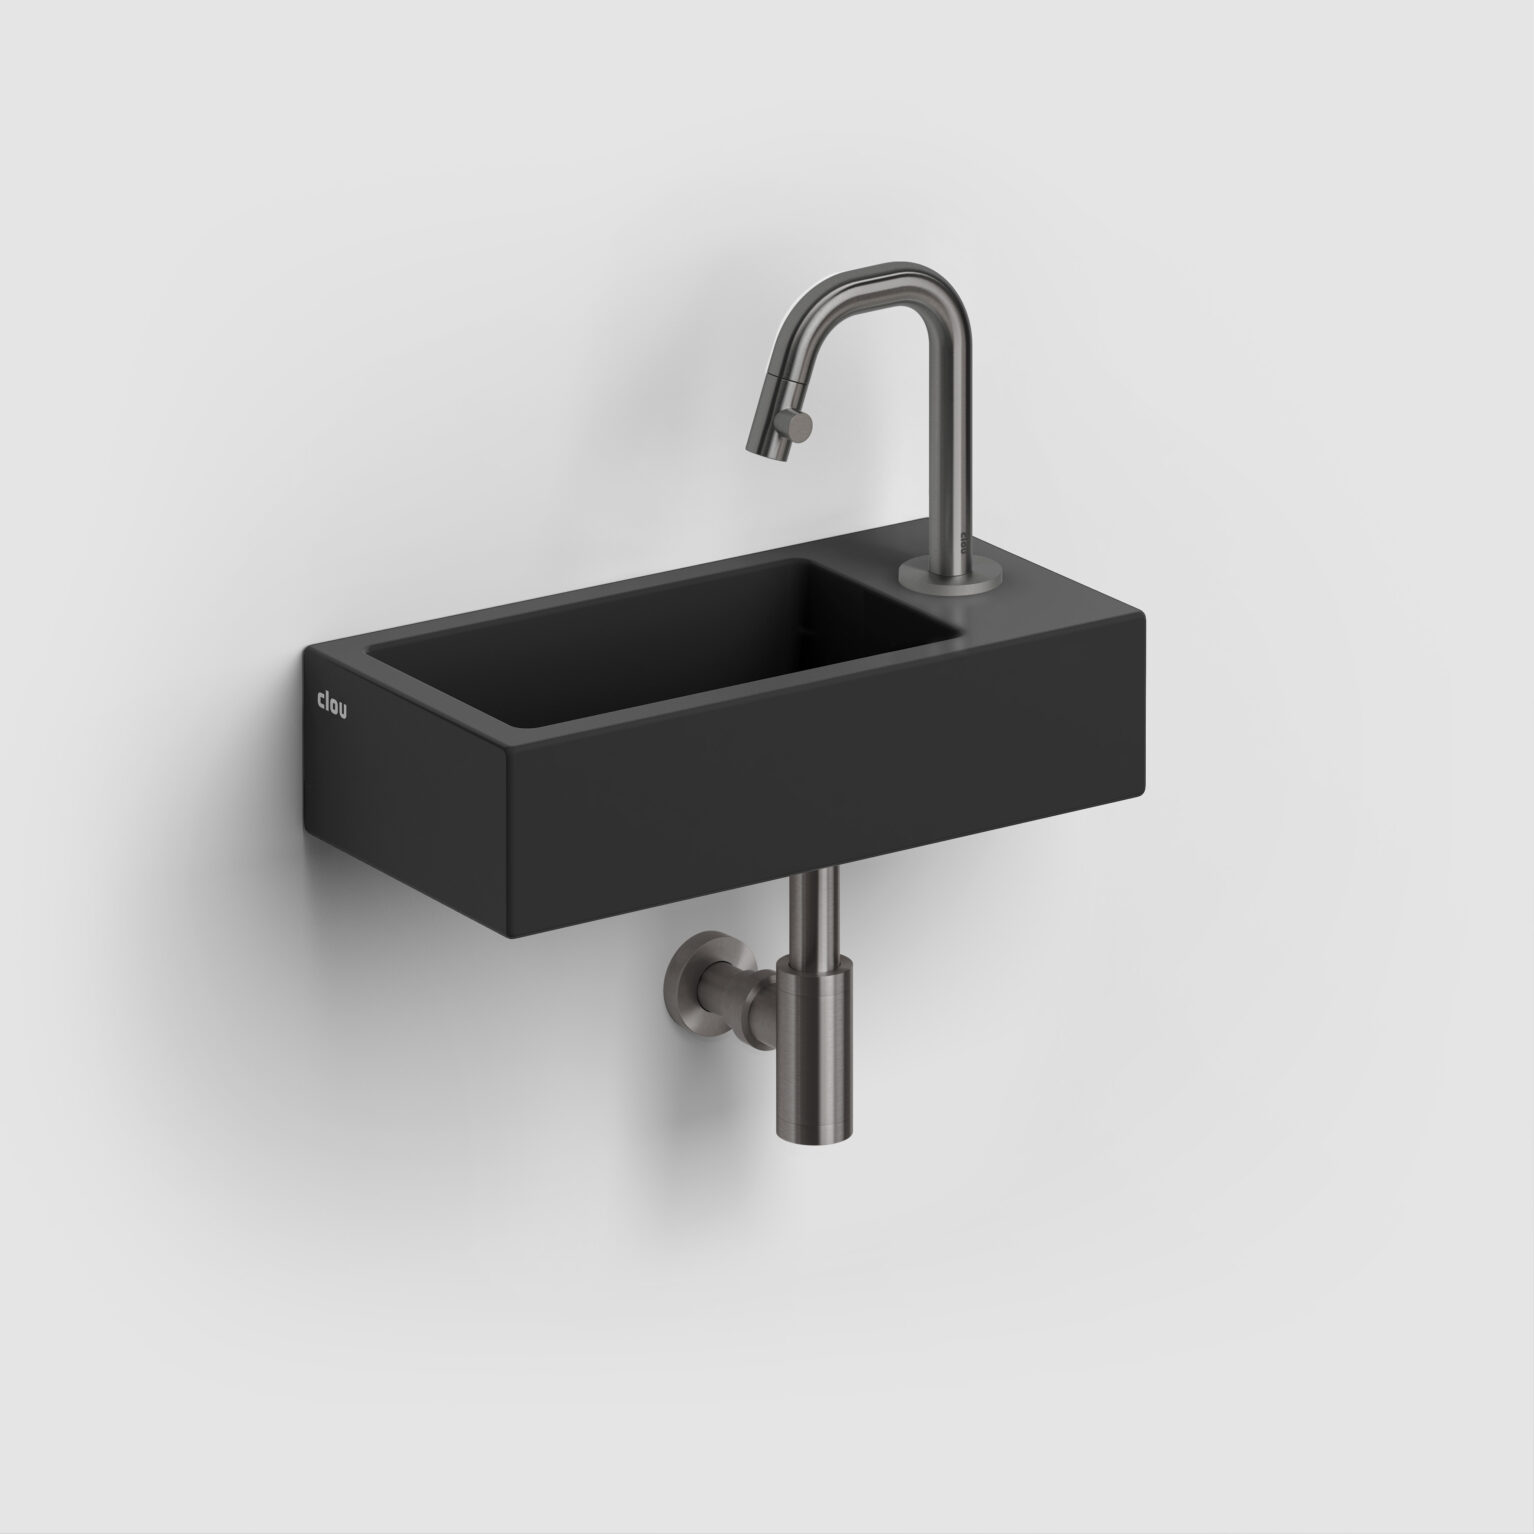 fontein-toilet-badkamer-luxe-sanitair-InBe-rechts-clou-36cm-Flush3-mat-zwart-CL0312030-Kaldur-koudwater-kraan-gunmetal-geborsteld-PVD-CL060500484R-MiniSuk-sifon-CL065301184